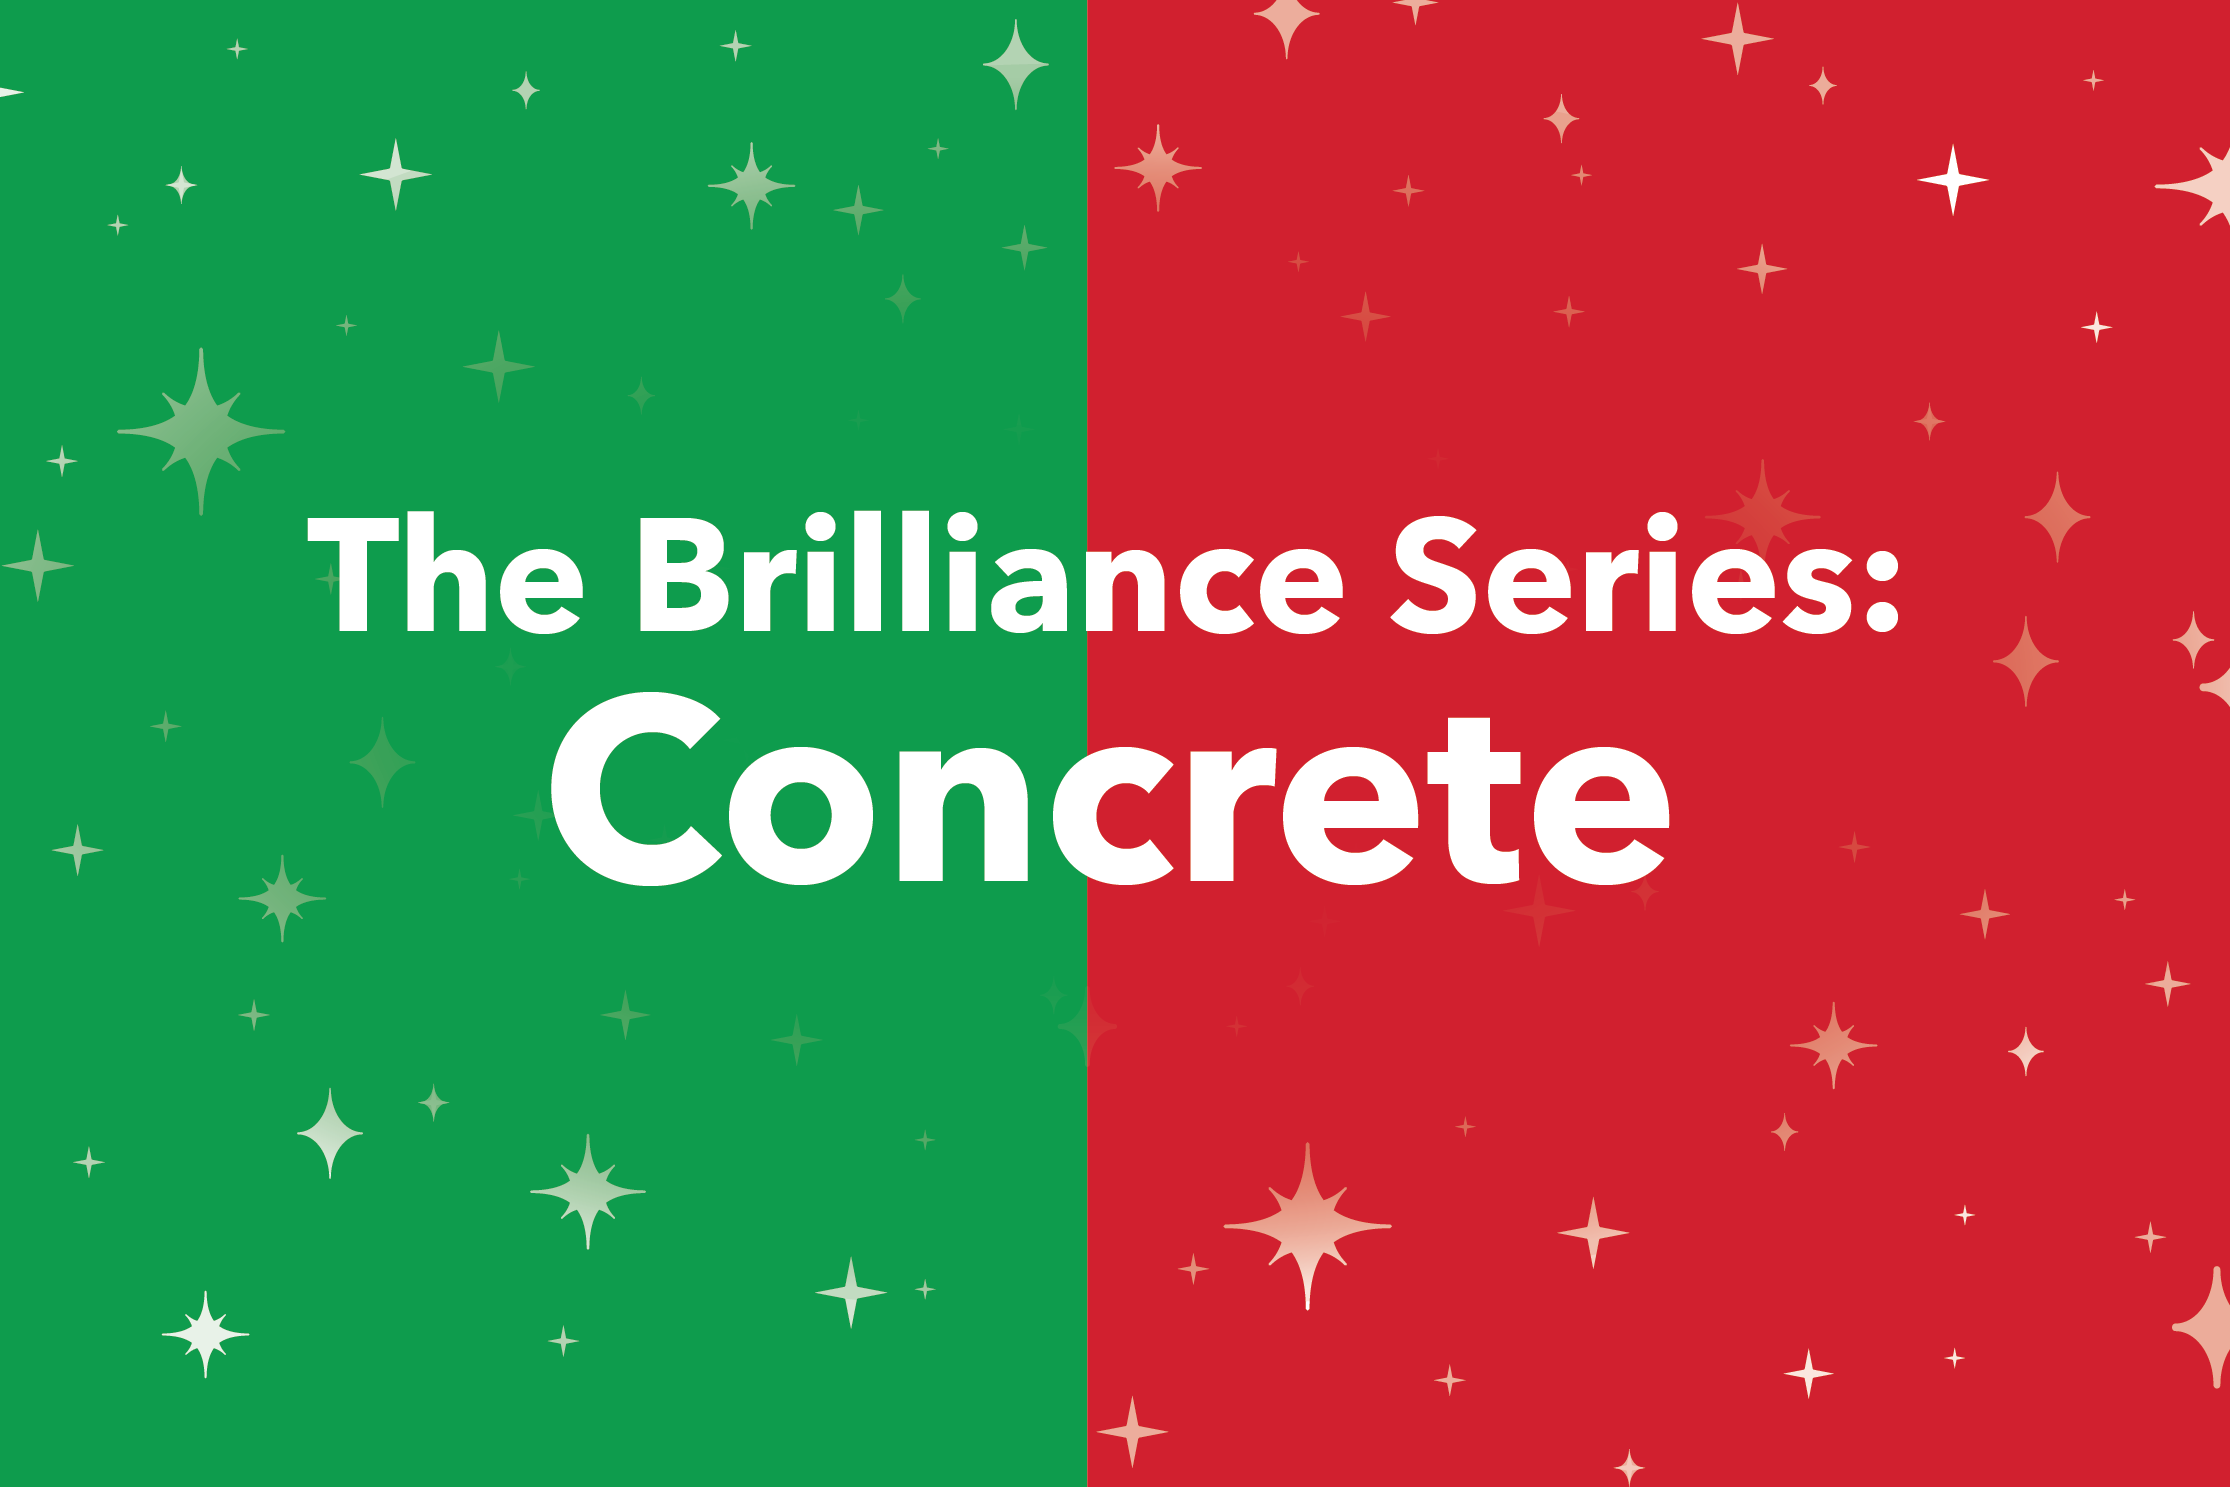 The Brilliance Series: Concrete